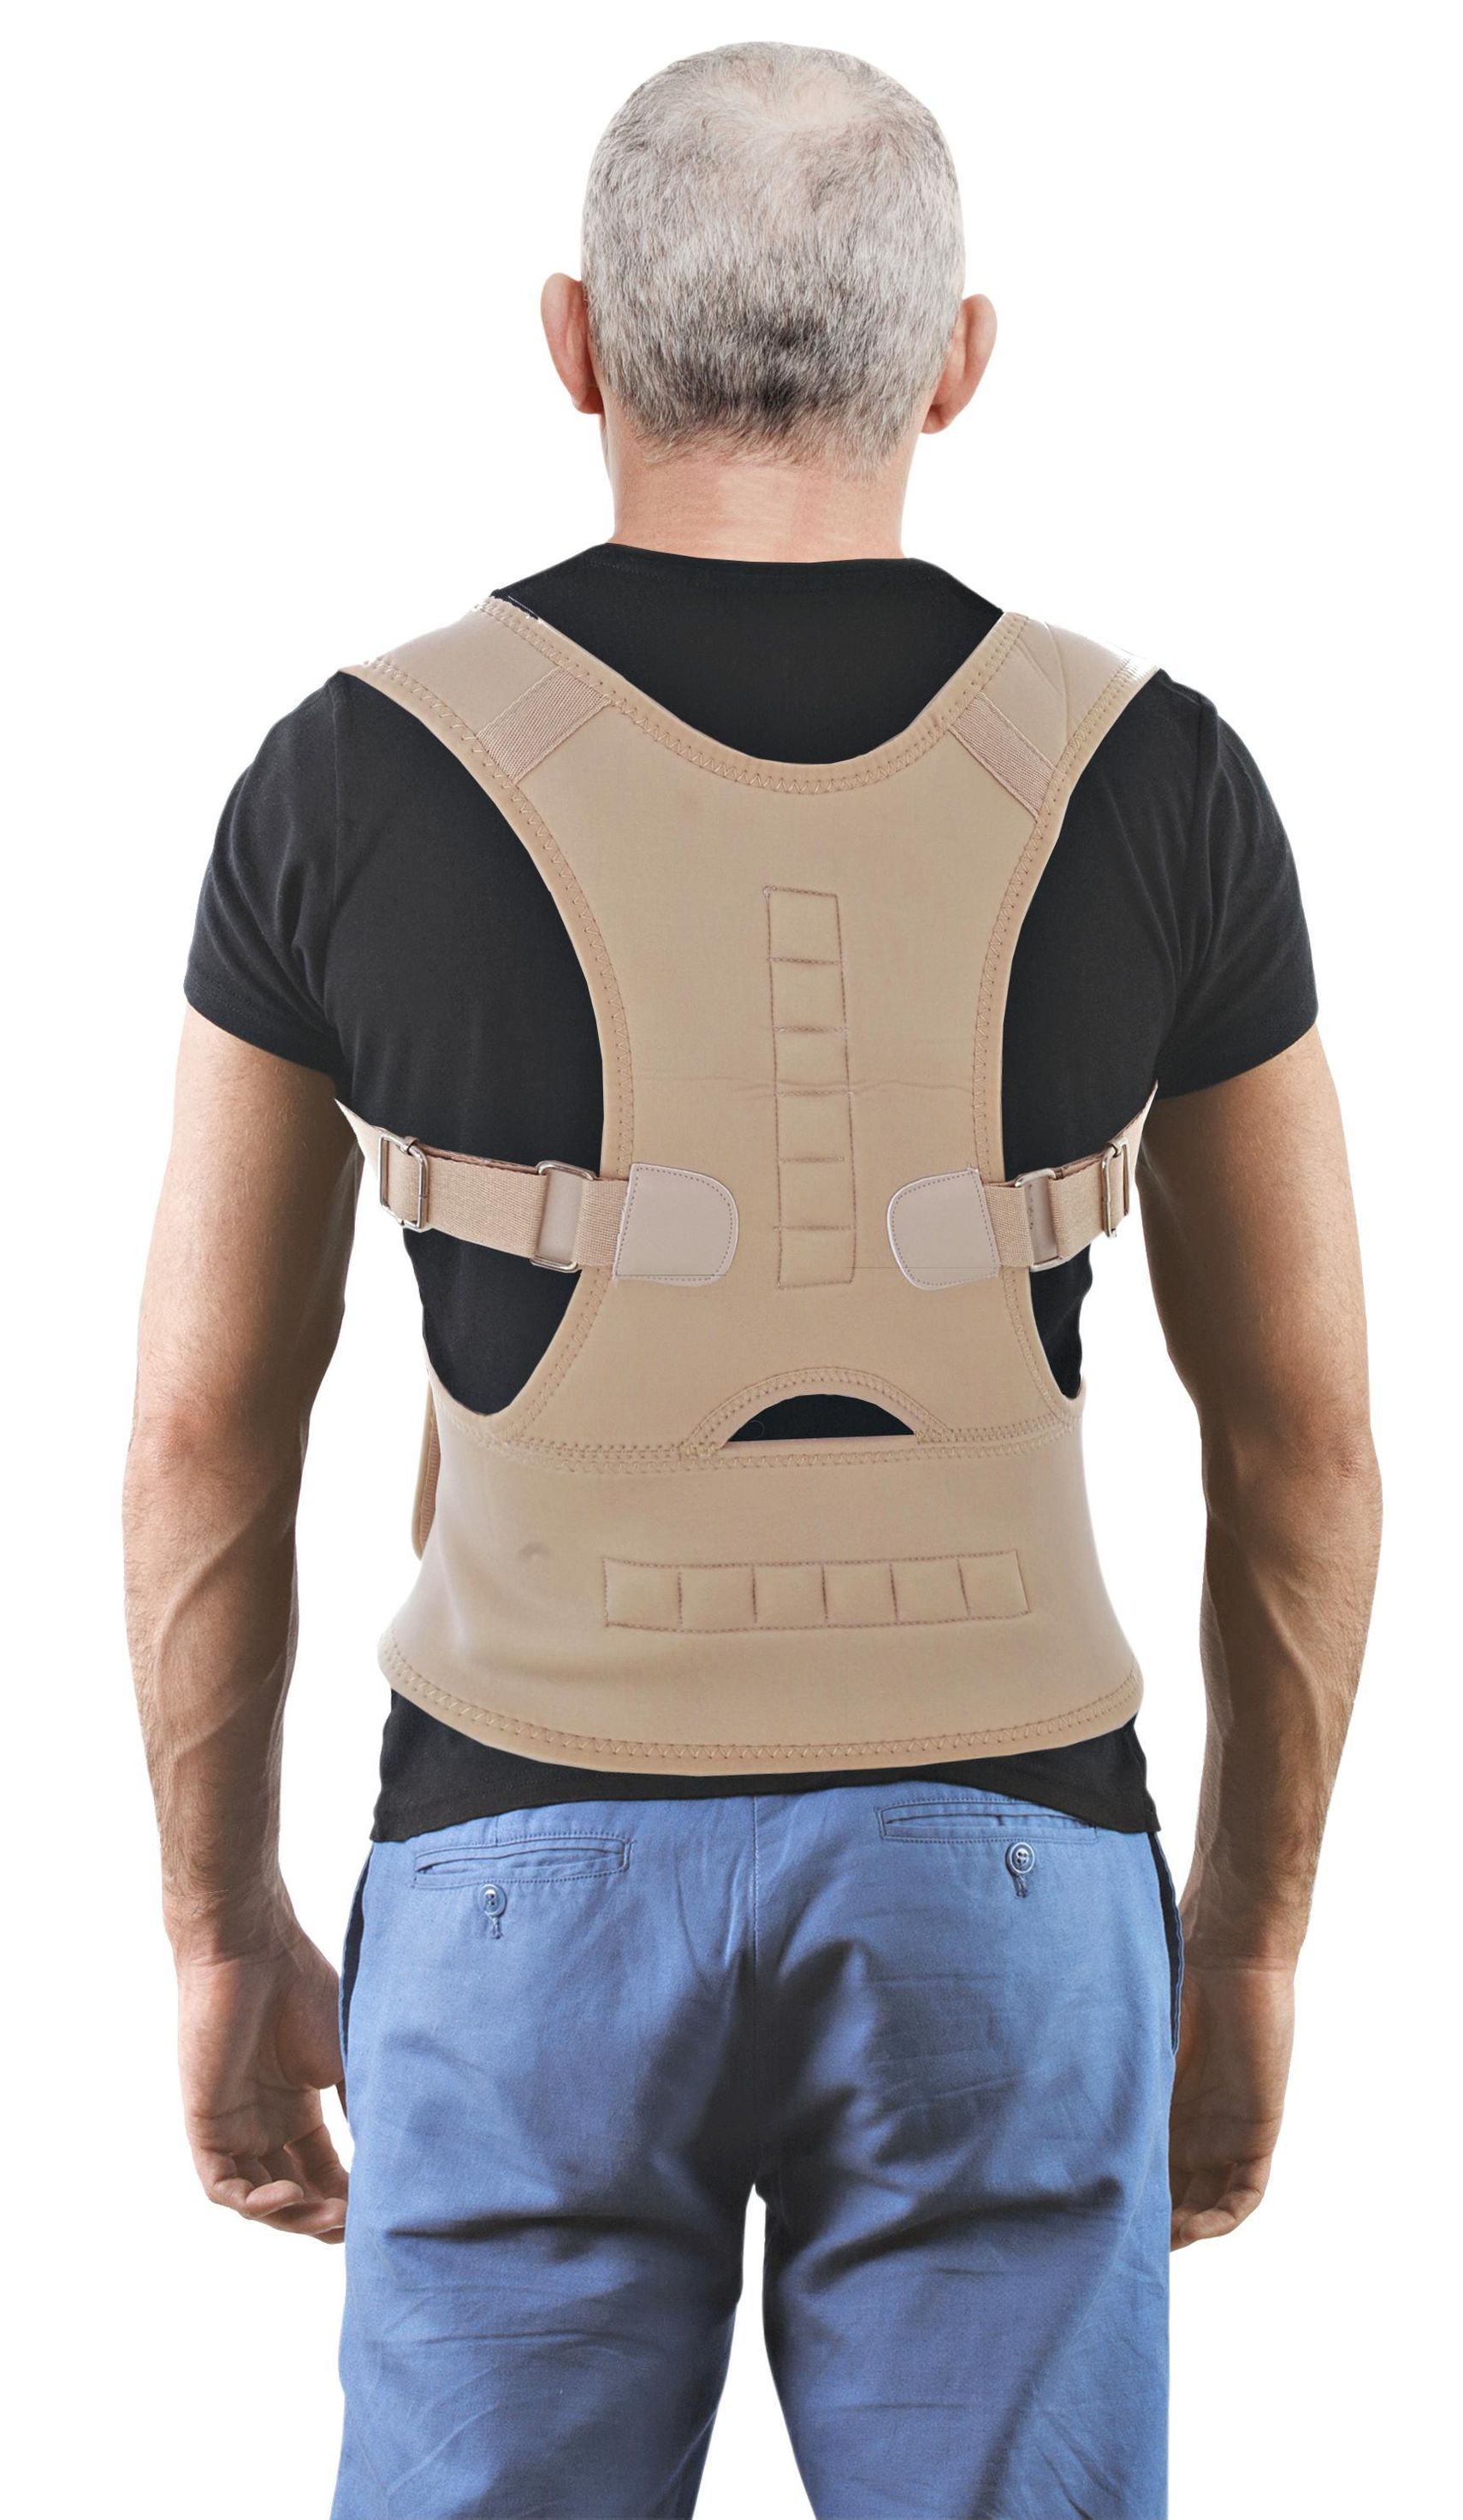 Haltungskorrektor Rücken-Bandage, Größe: L & XL | Weltbild.de